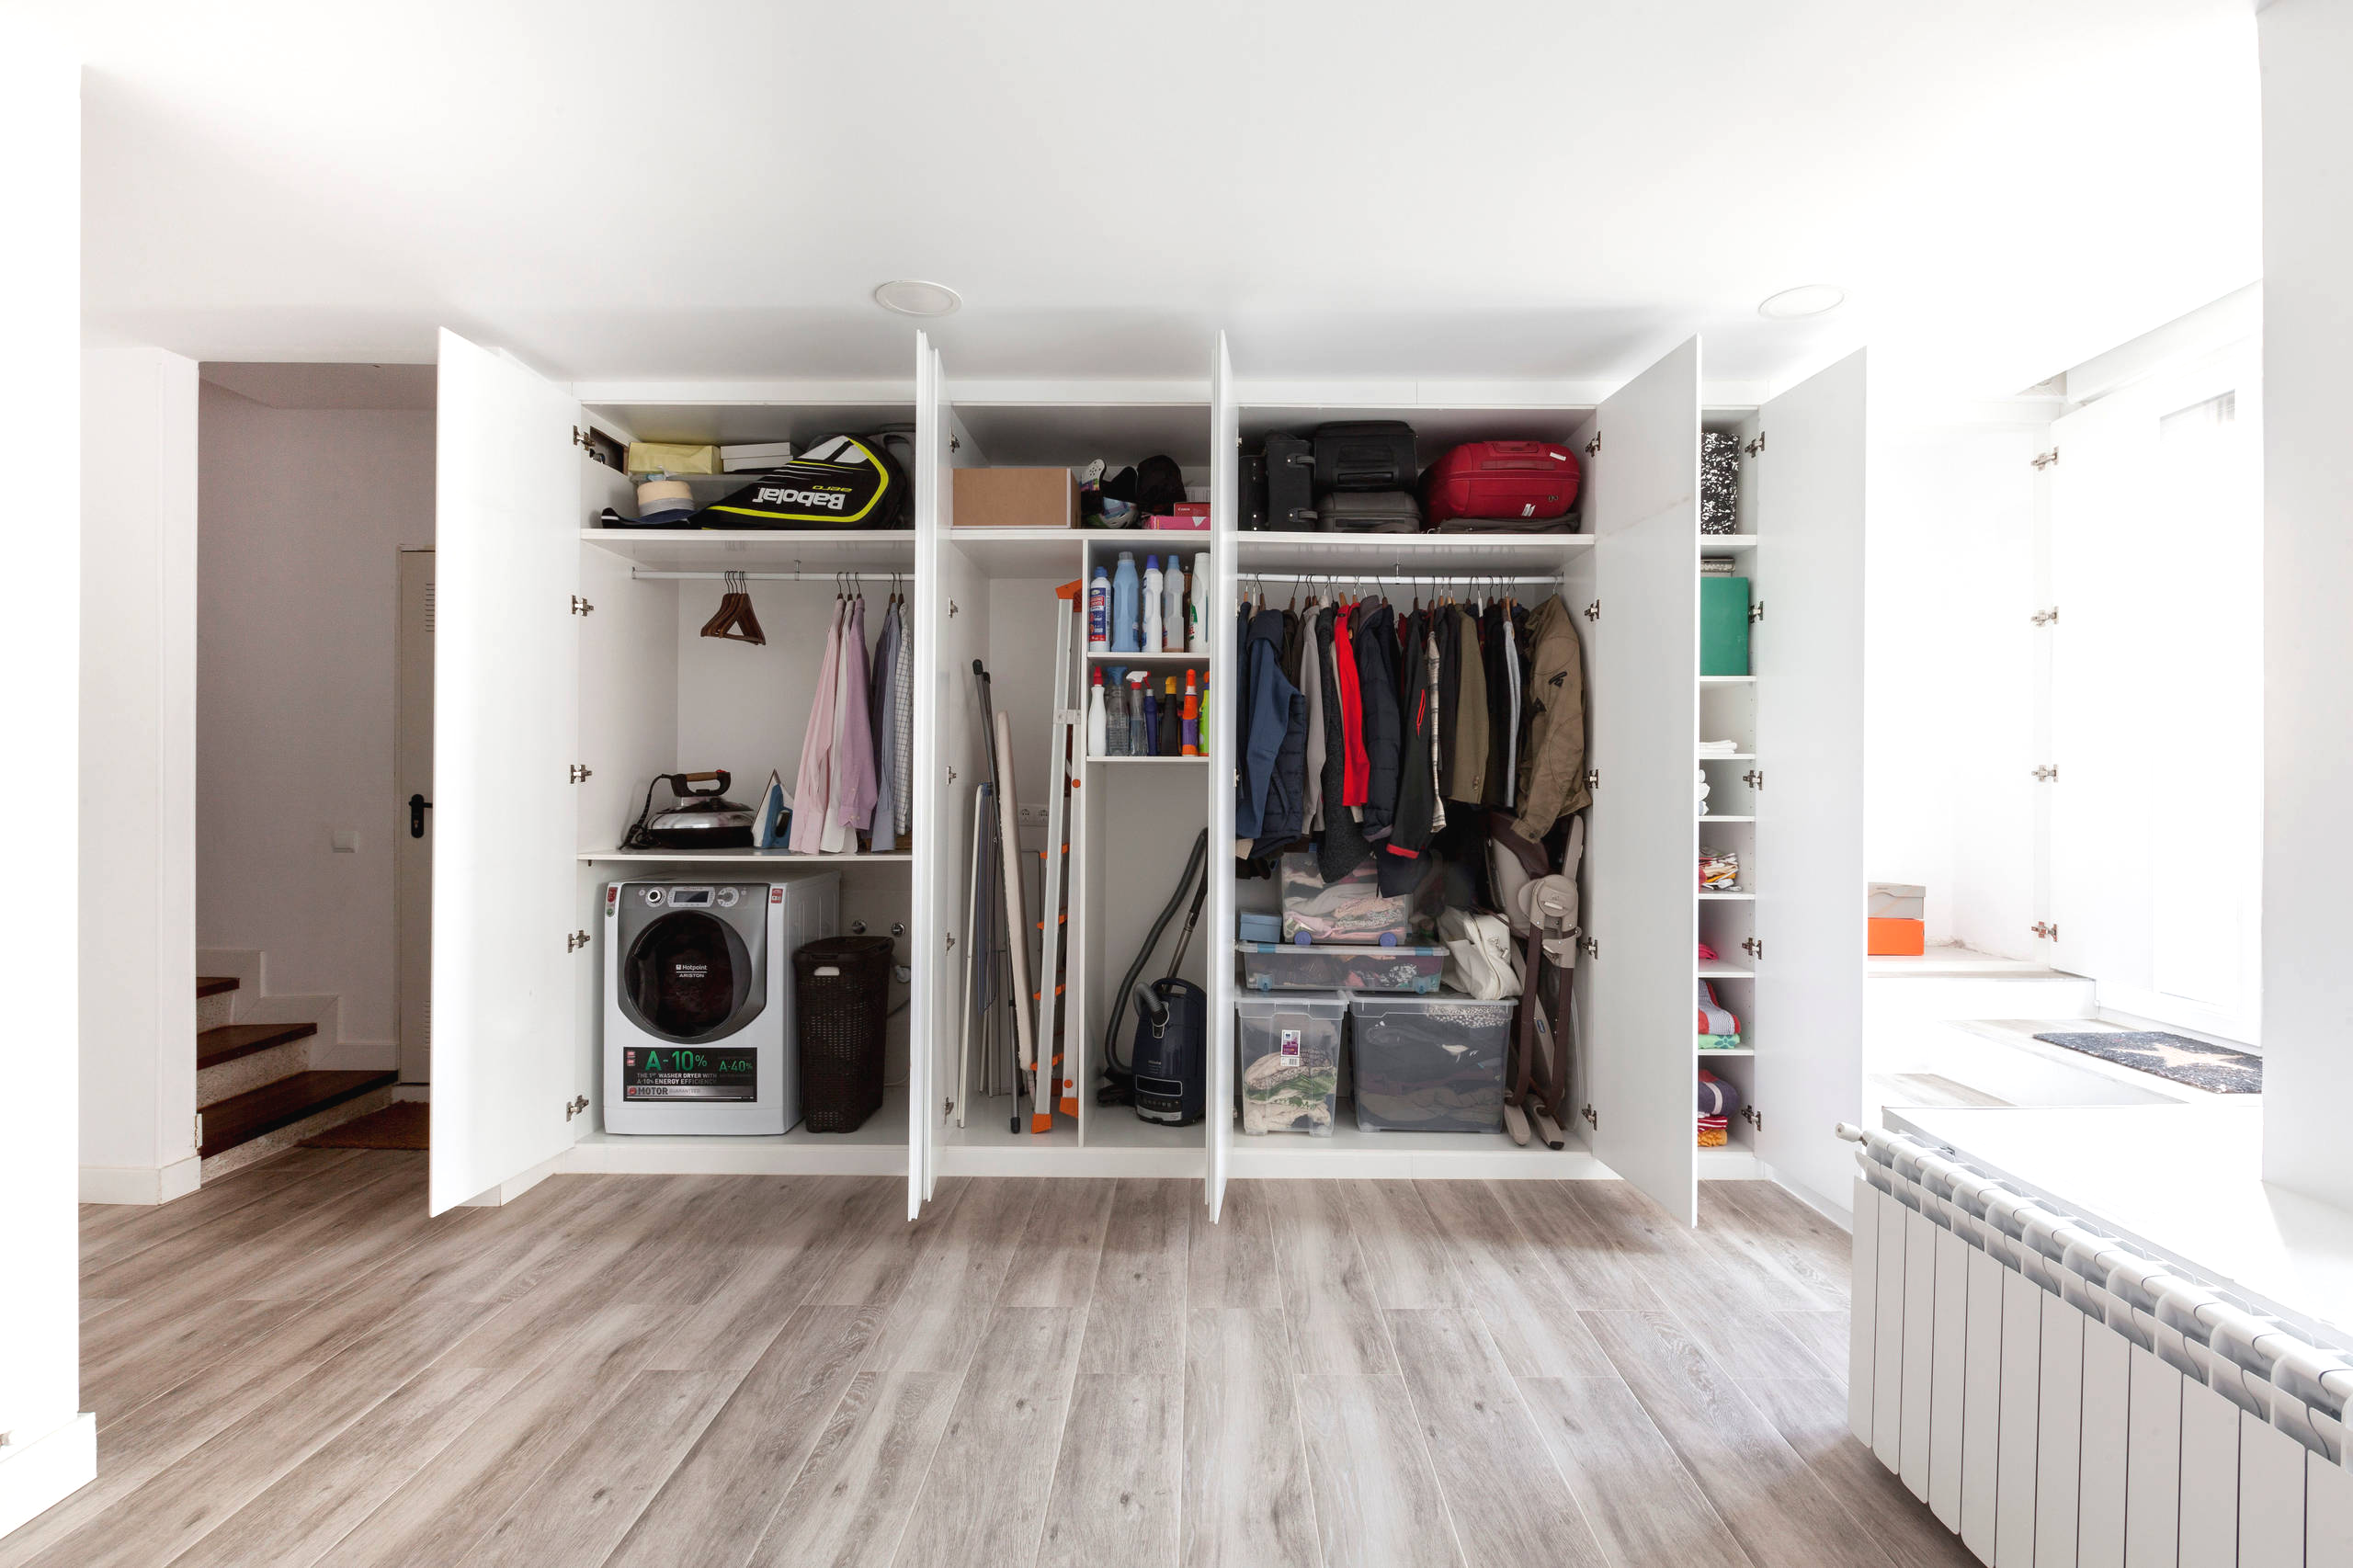 Шкаф-купе – это идеальное место хранения и одежды, и бытовой утвари